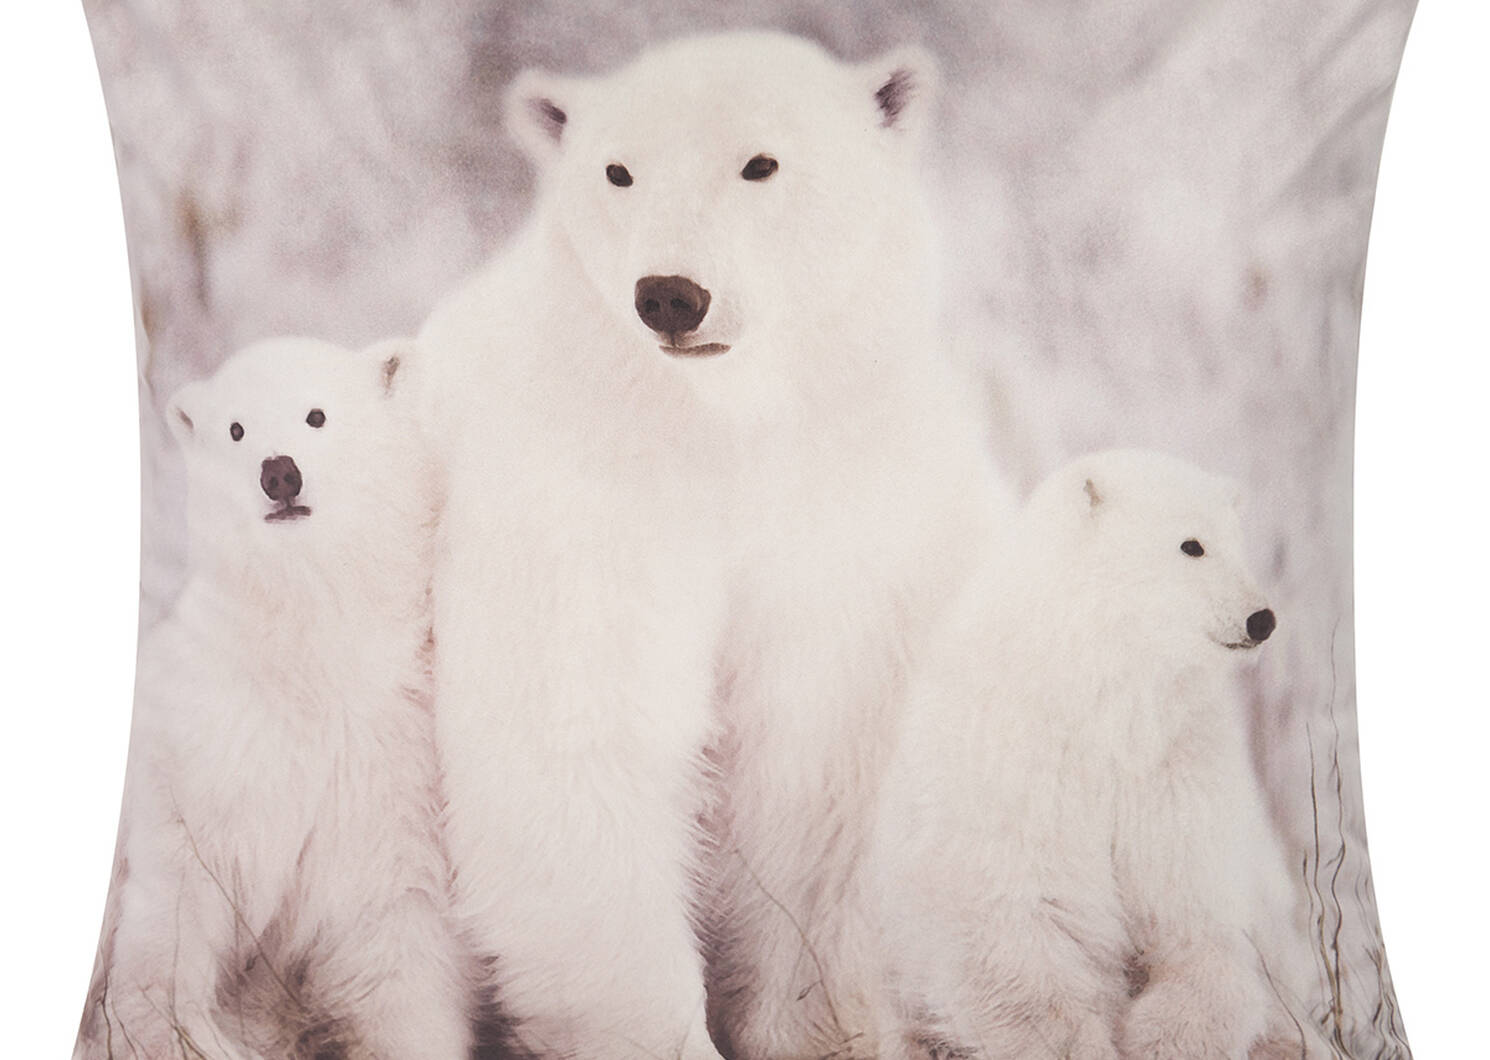 Polar Bear Family Toss 20x20 White